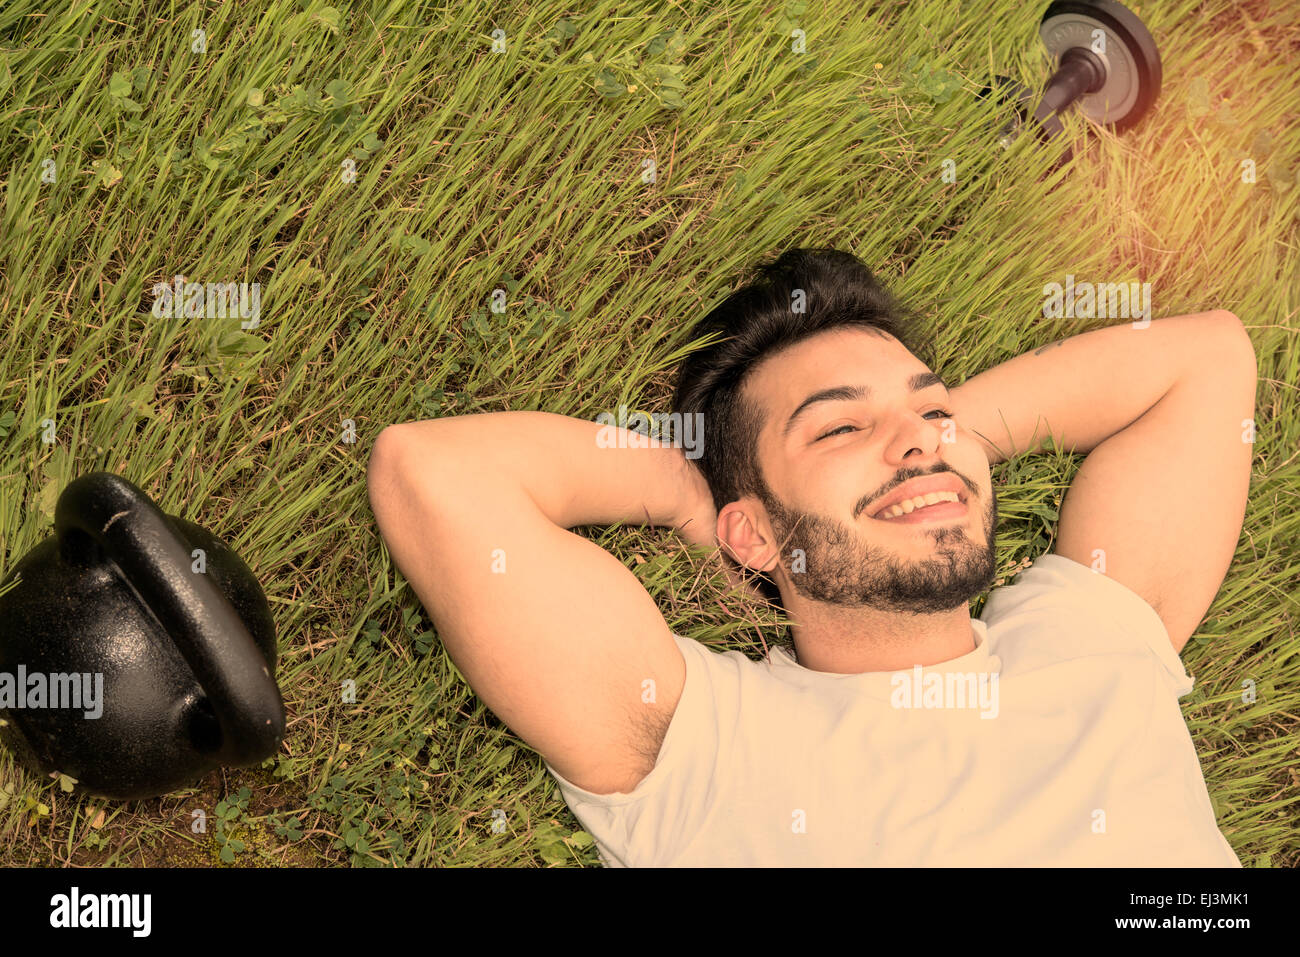 Porträt des jungen sportlichen Männermodel Lachen nachdem Sport Zeitfilter warm und ein Linseneffekt angewendet Stockfoto